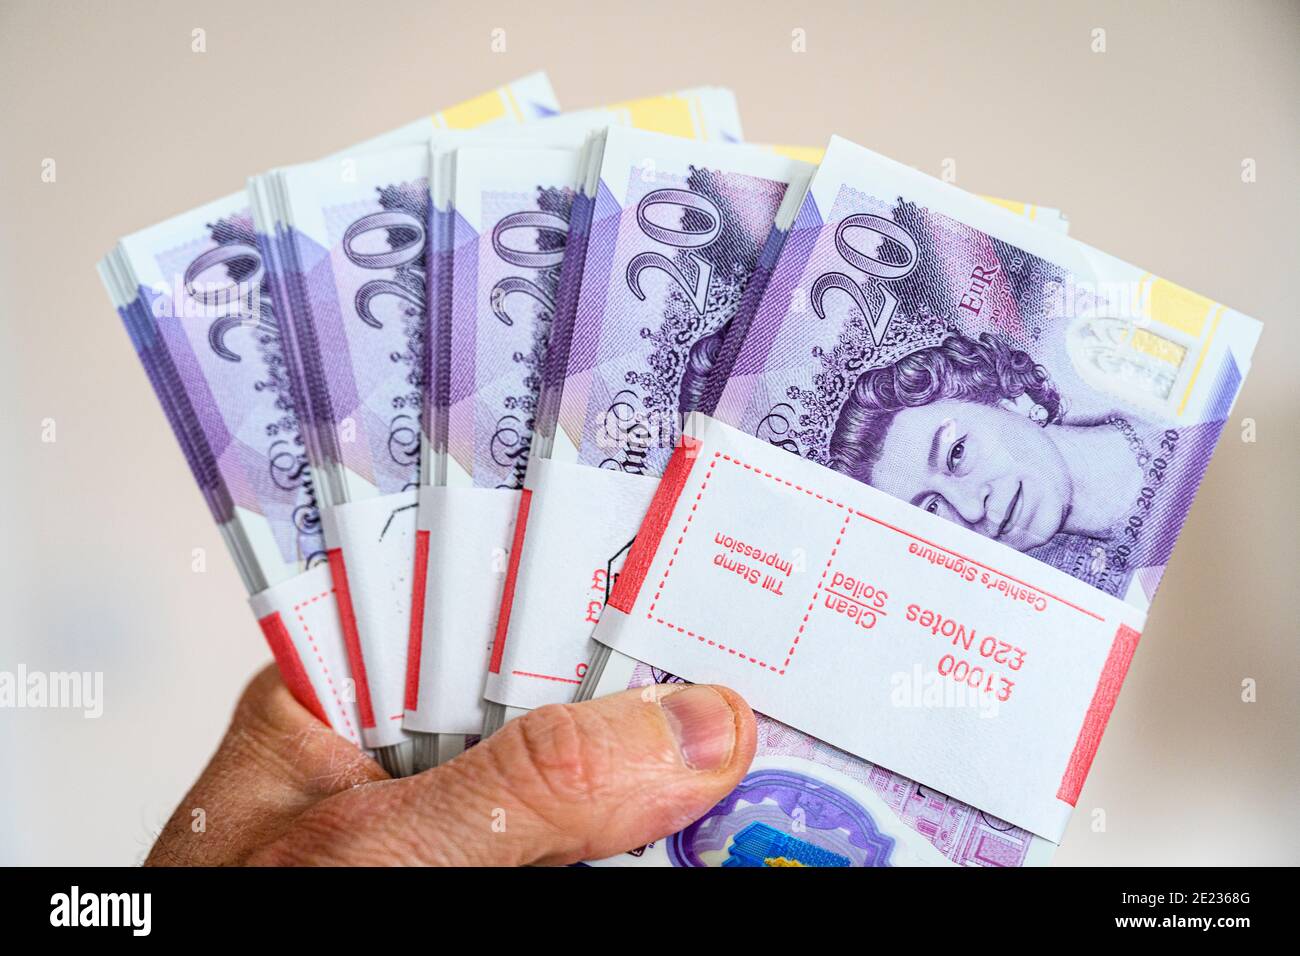 Nahaufnahme der Hand, die £5000 Bargeld in £20-Banknoten hält. Britische Währung. Britisches Pfund Sterling. Stockfoto